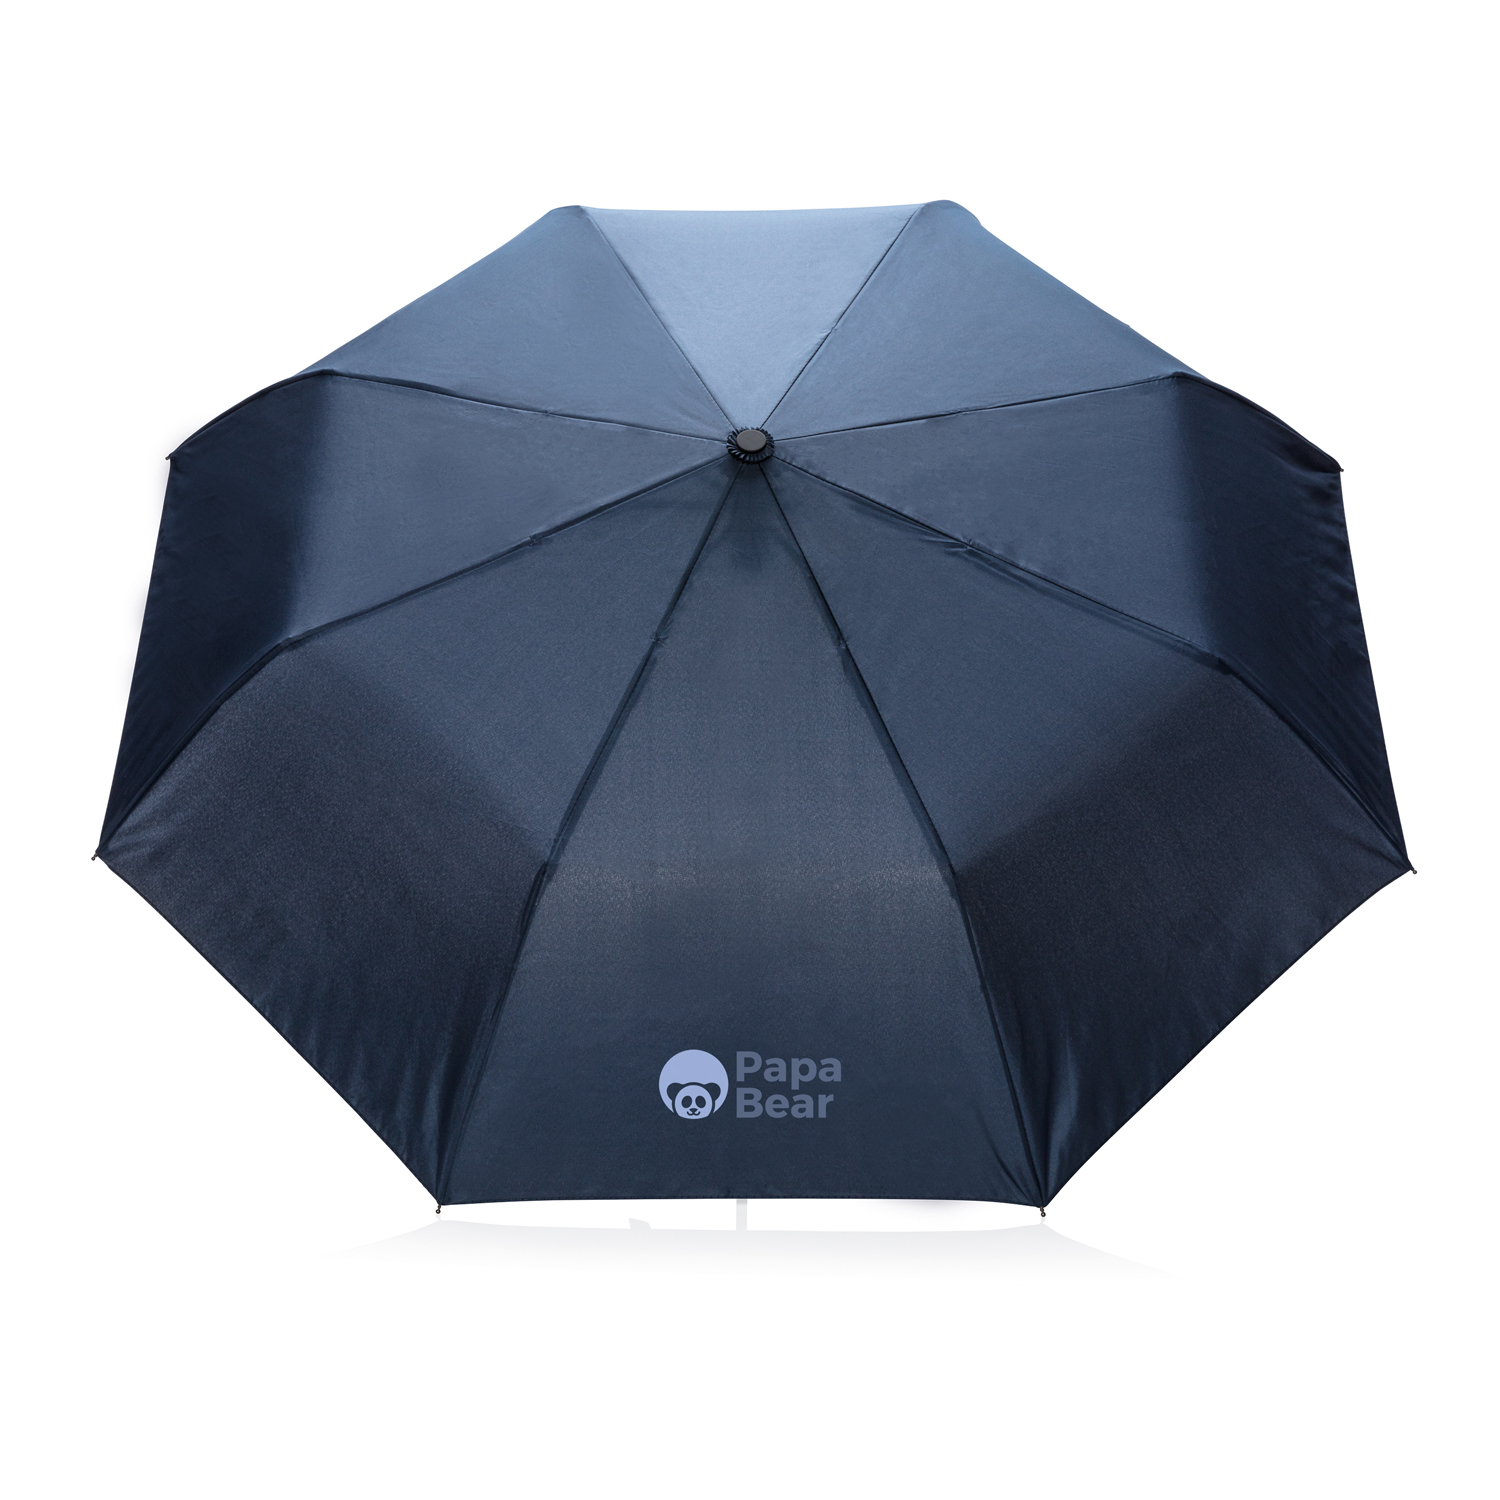 Складной зонт-полуавтомат  Deluxe d97 см